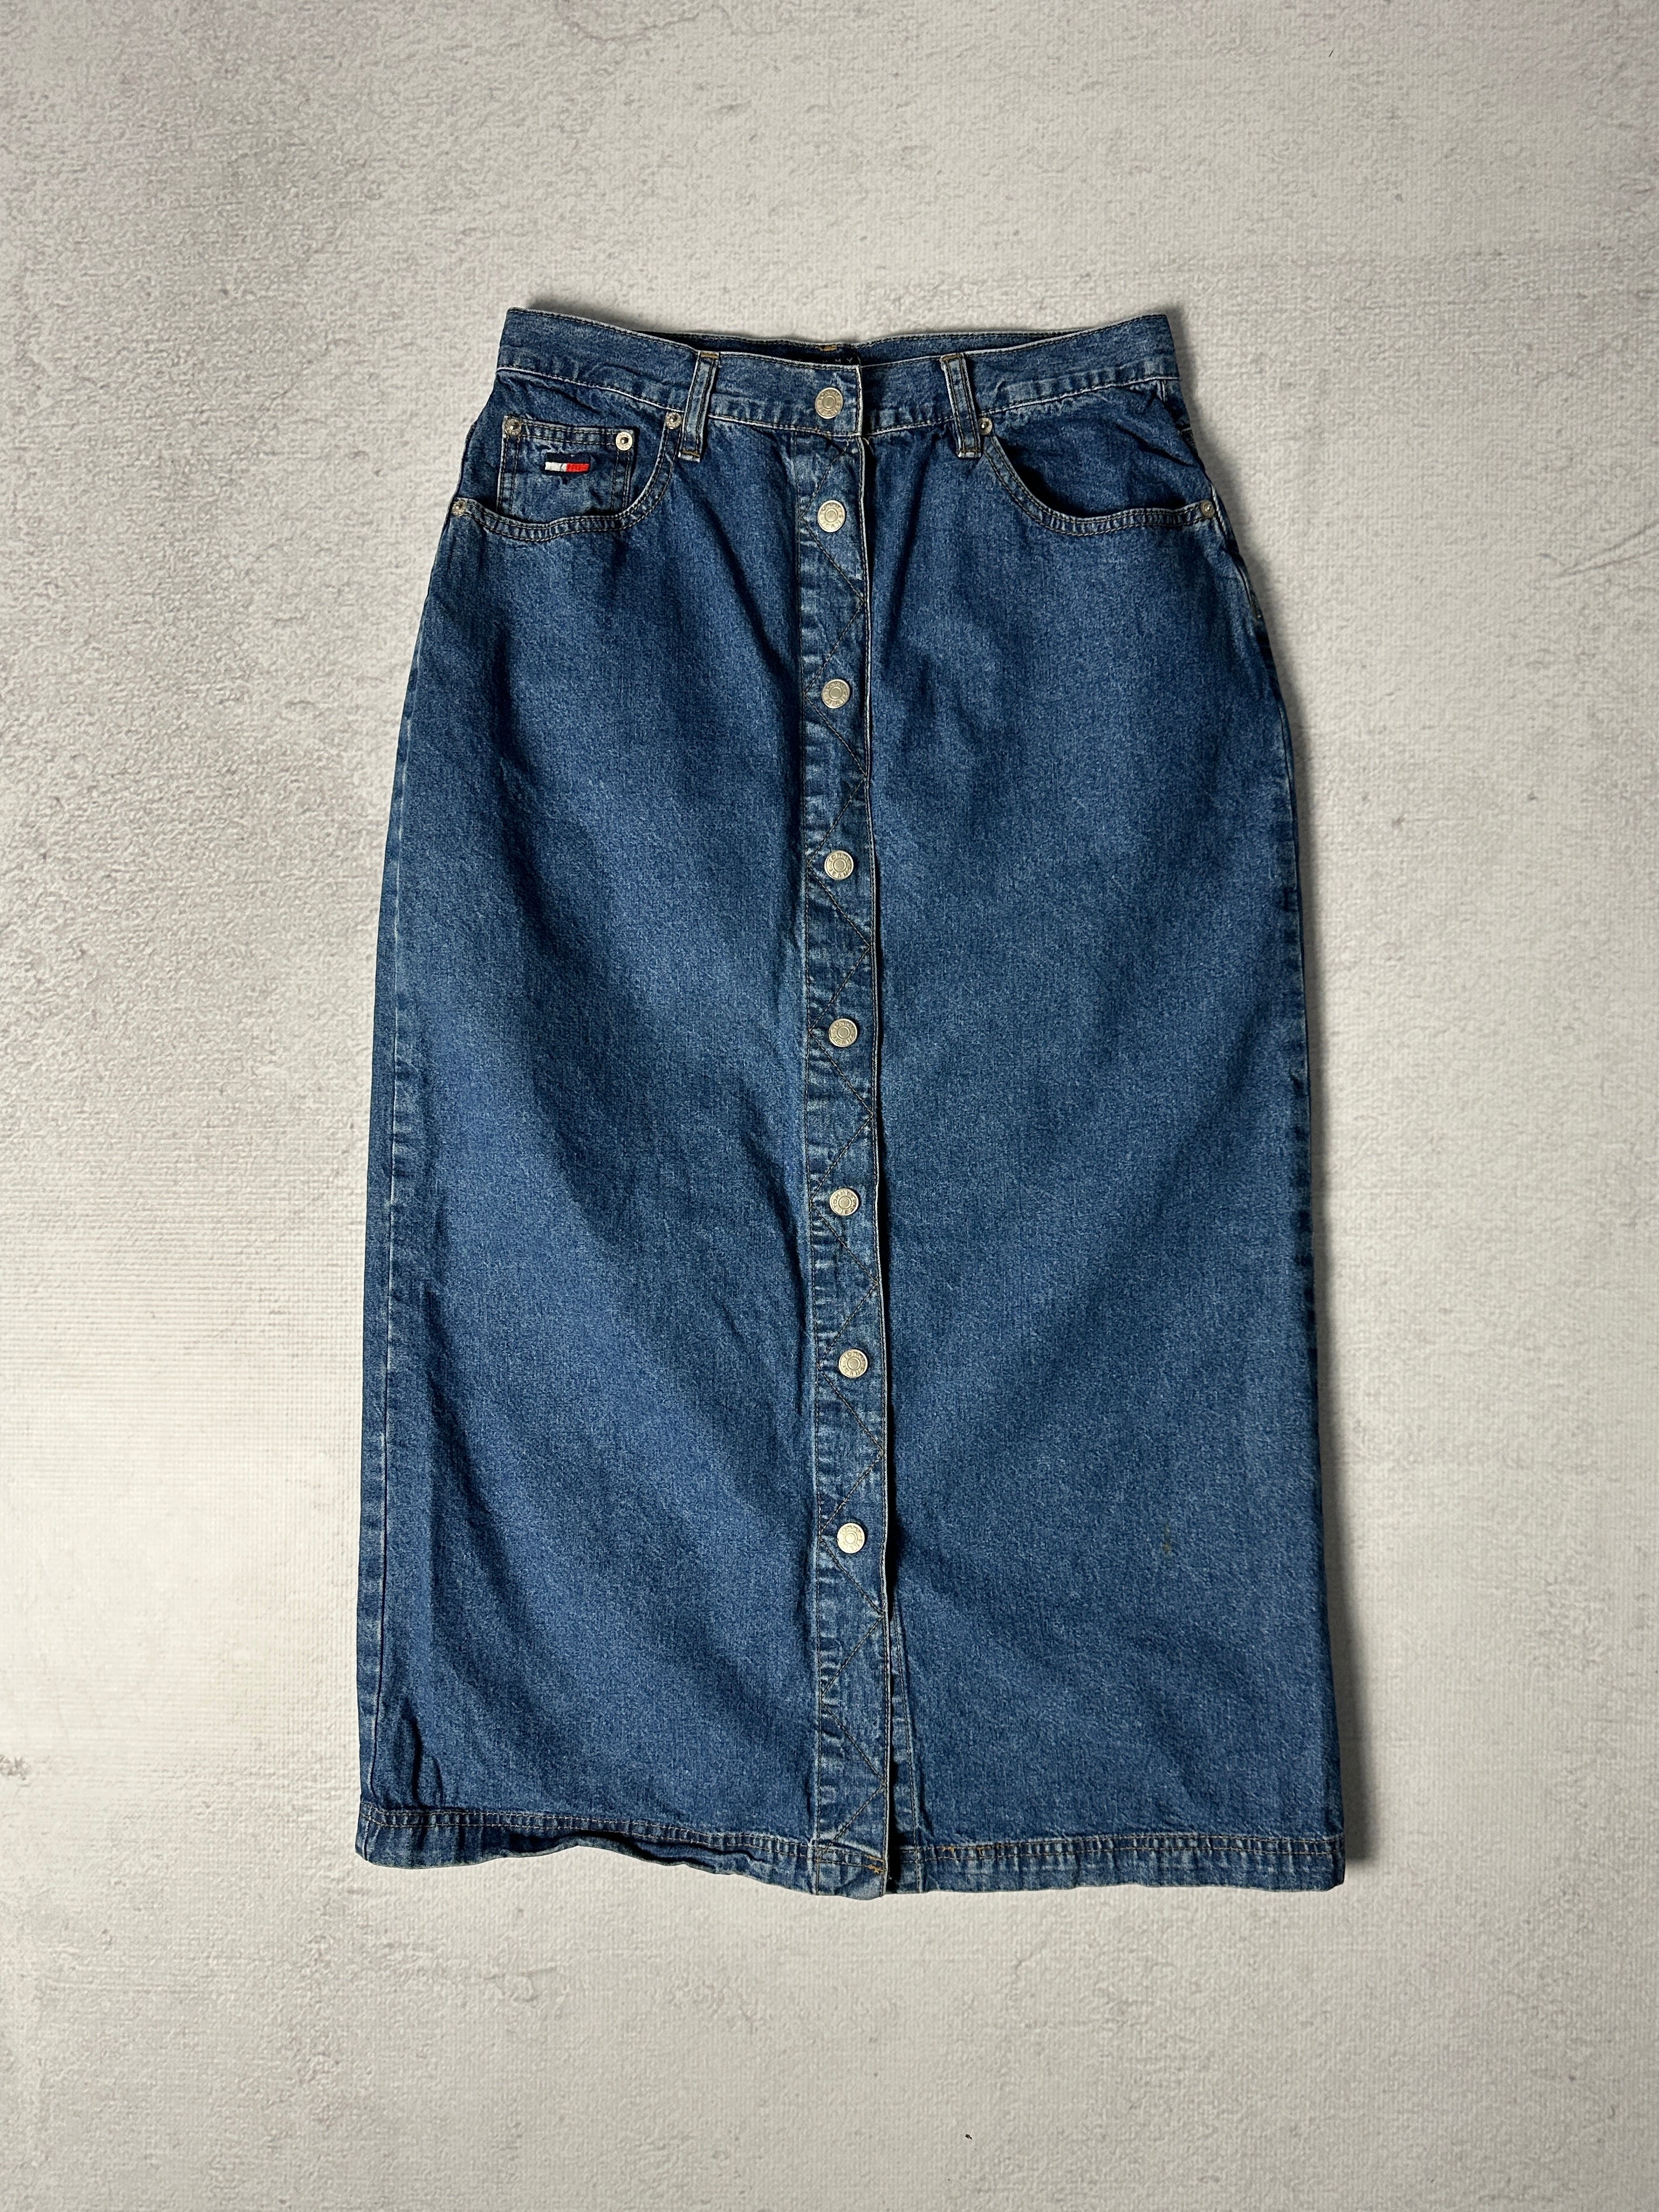 Vintage Tommy Hilfiger Denim Skirt - Women's 30 x 34